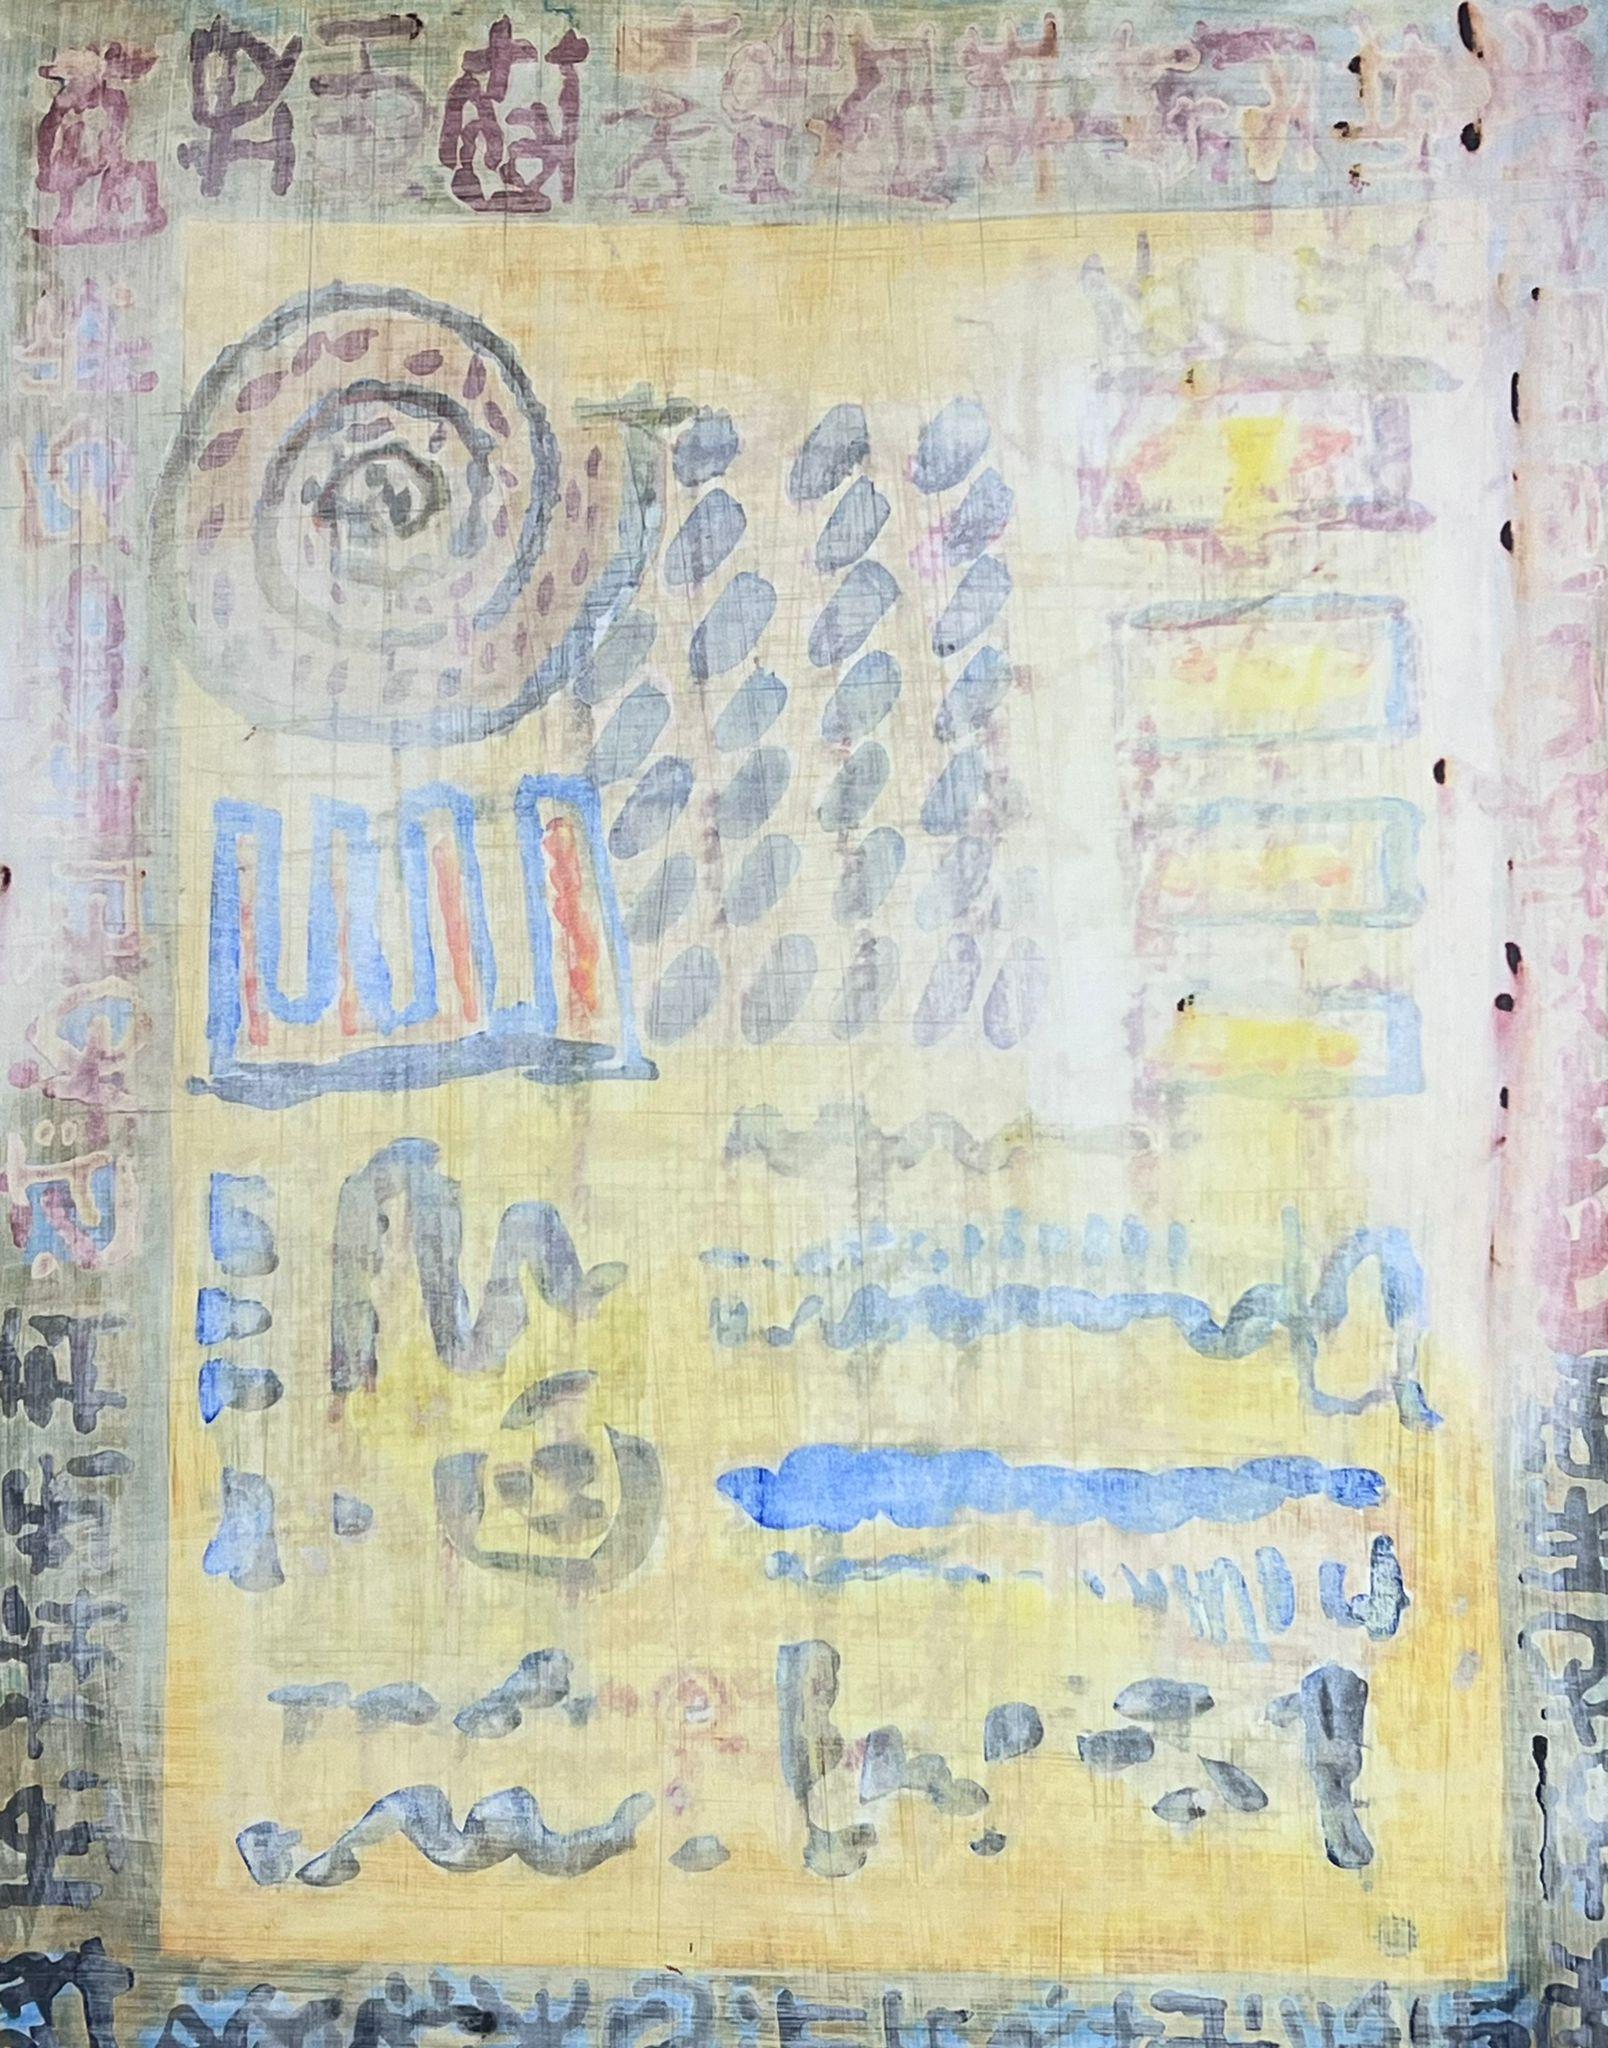 Composition expressionniste abstraite 
de Jacques COULAIS (1955-2011) peinture à l'aquarelle sur carton épais
sans cadre : 25.5 x 19.5 pouces
état : excellent
provenance : tous les tableaux de cet artiste que nous avons en vente proviennent du